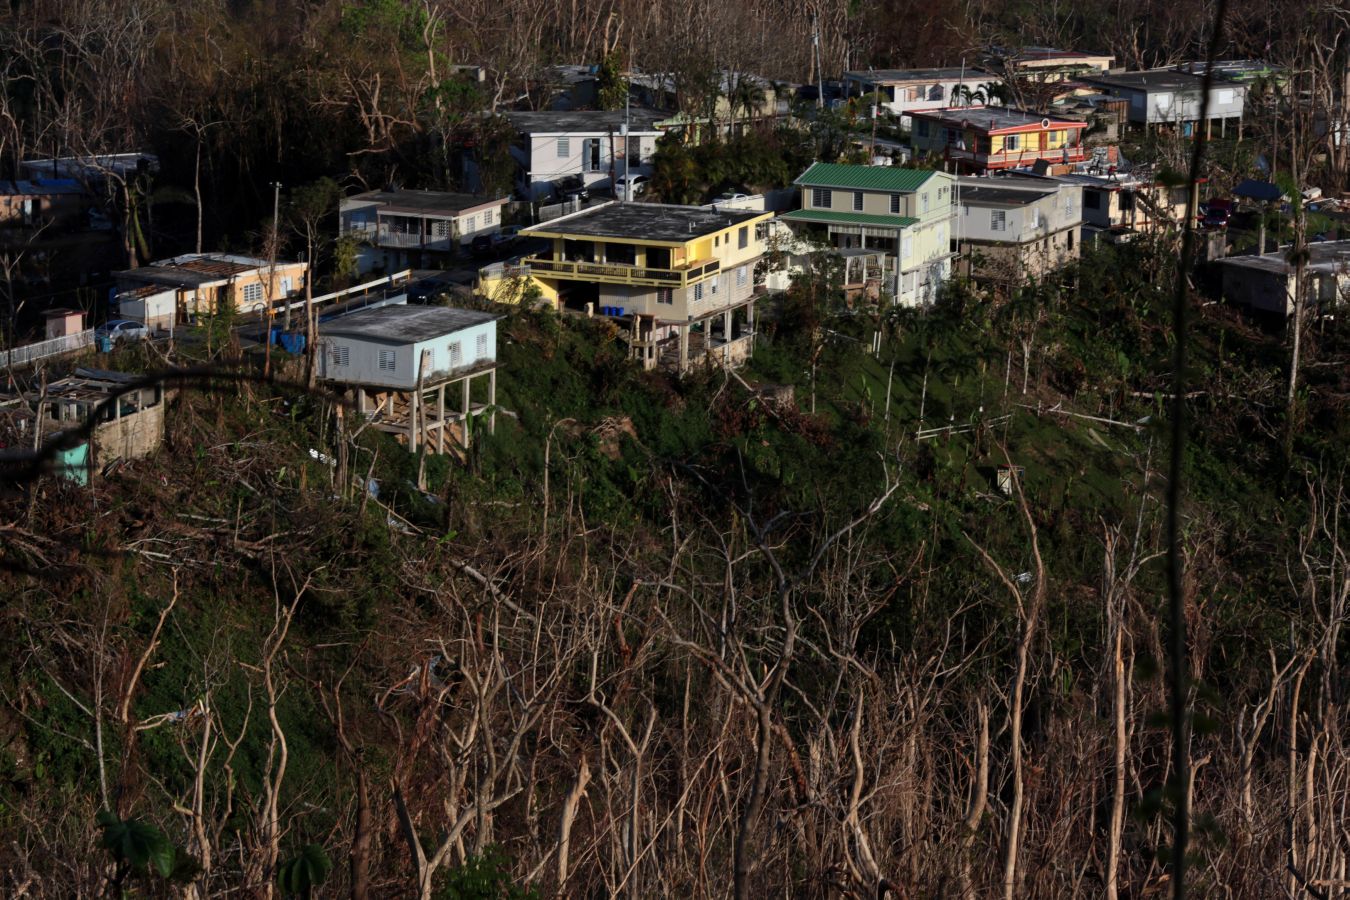 La isla quedó devastada tras el paso del huracán. Hay localidades que aún no tienen luz ni agua potable y los accesos por carretera son complicados en algunos puntos. Las imágenes hablan por sí solas